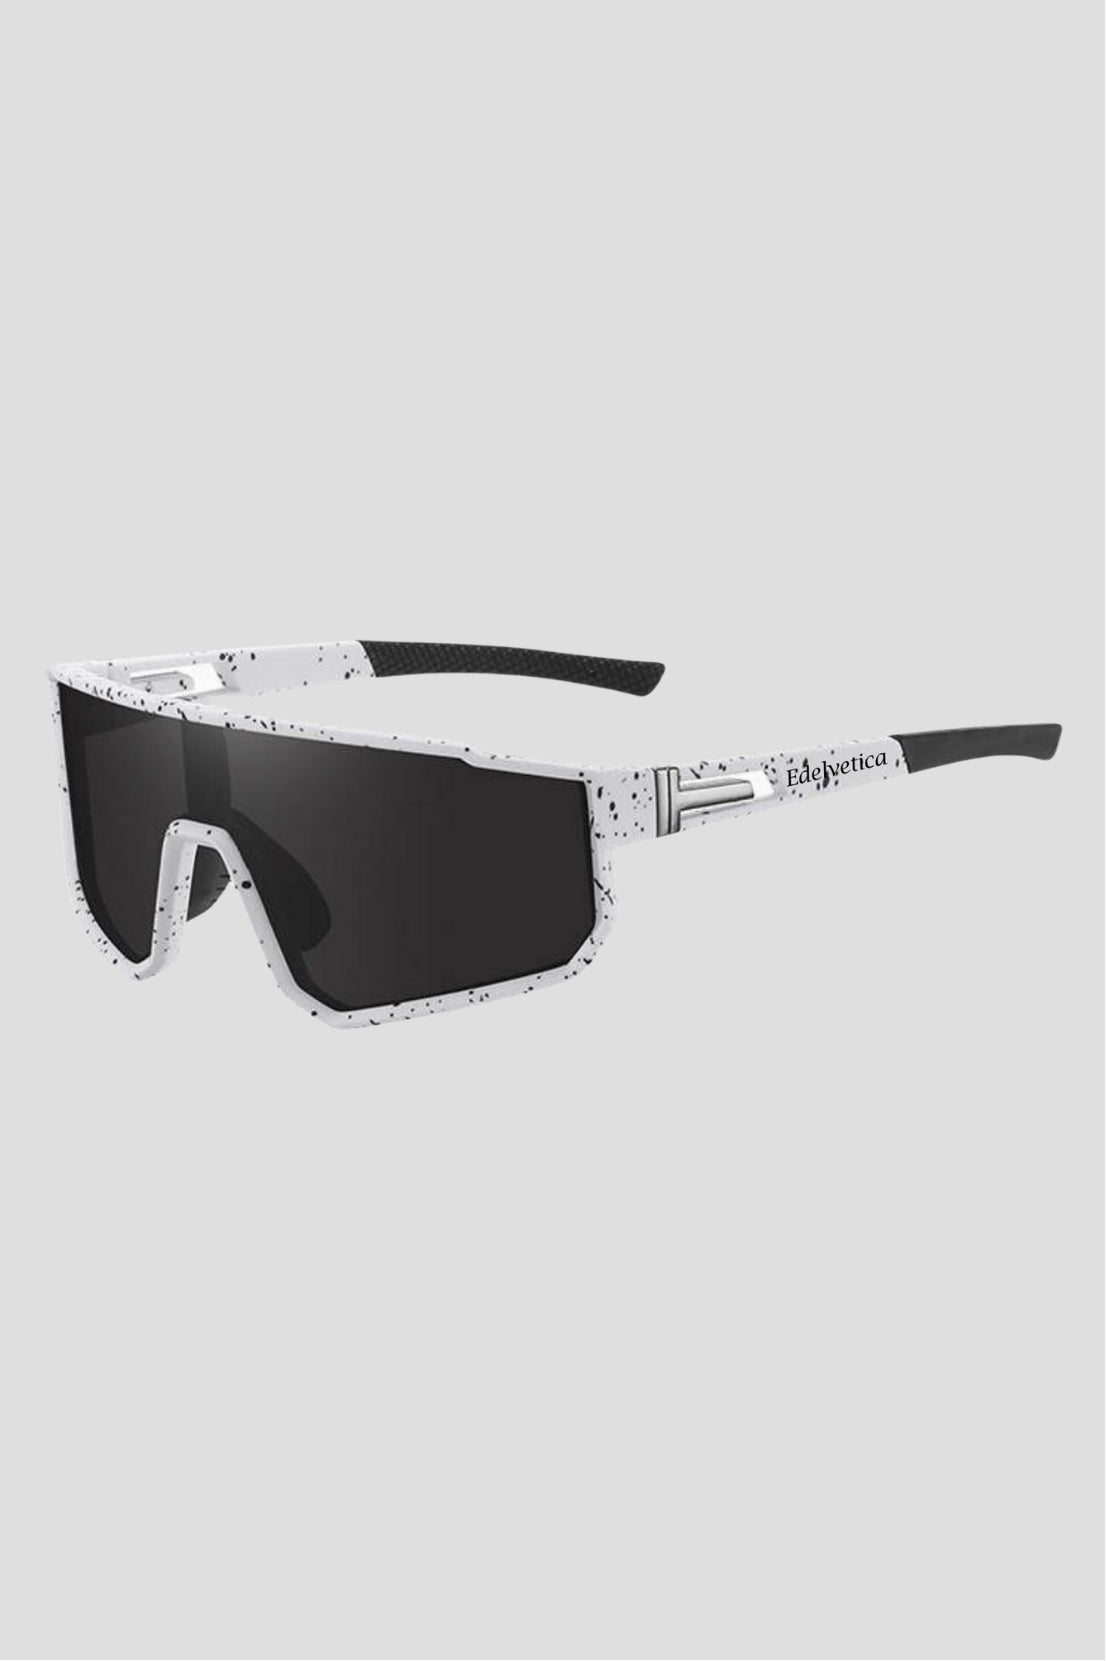 Unisex Sonnenbrille 'Edge' von Edelvetica, eine moderne und stilvolle Sonnenbrille. Sie zeichnet sich durch ihr einzigartiges, kantiges Design aus, das eine trendige und modische Ausstrahlung bietet. Perfekt für Männer und Frauen, die ein Statement-Accessoire suchen, das sowohl Schutz als auch modisches Flair bietet.